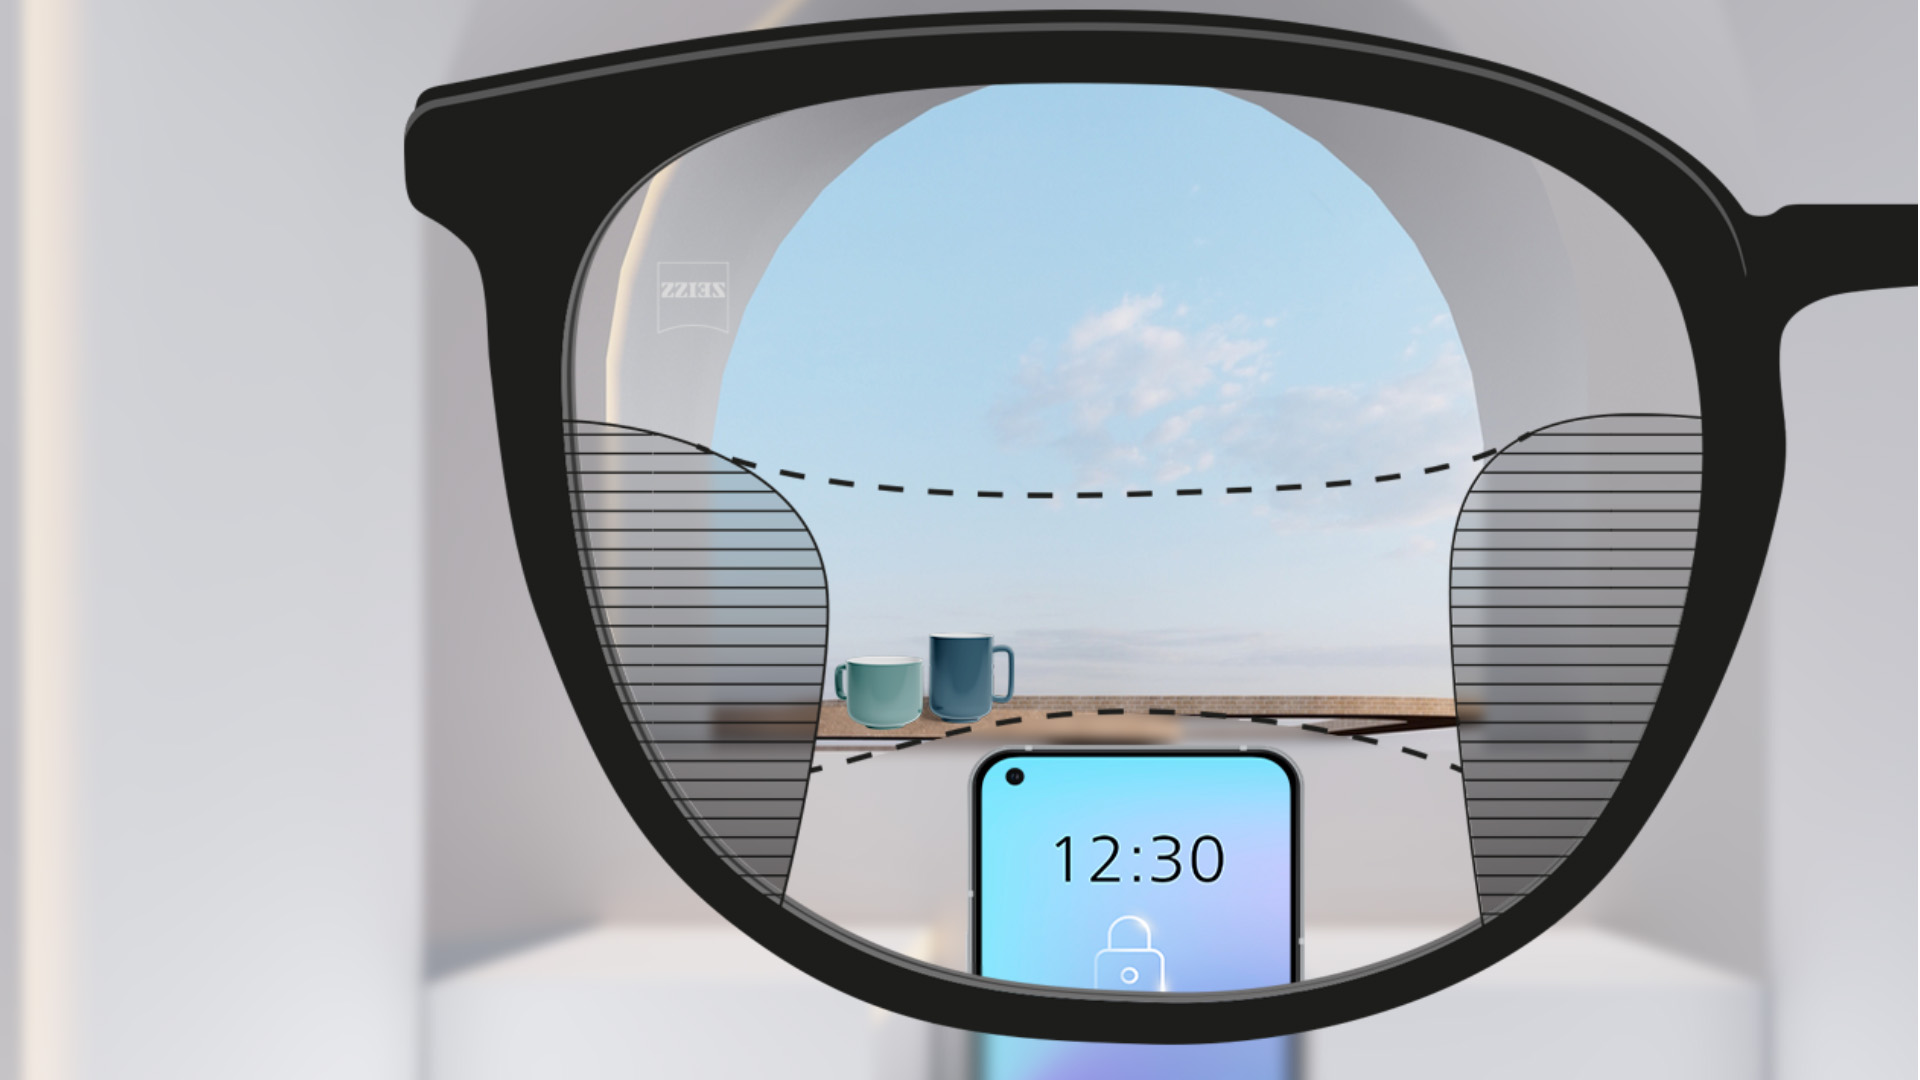 配戴蔡司智锐渐进镜片的第一人称视角示意。眼前是一台智能手机，远处是一只杯子，镜片视觉清晰，左右两侧的细长区域稍有模糊。